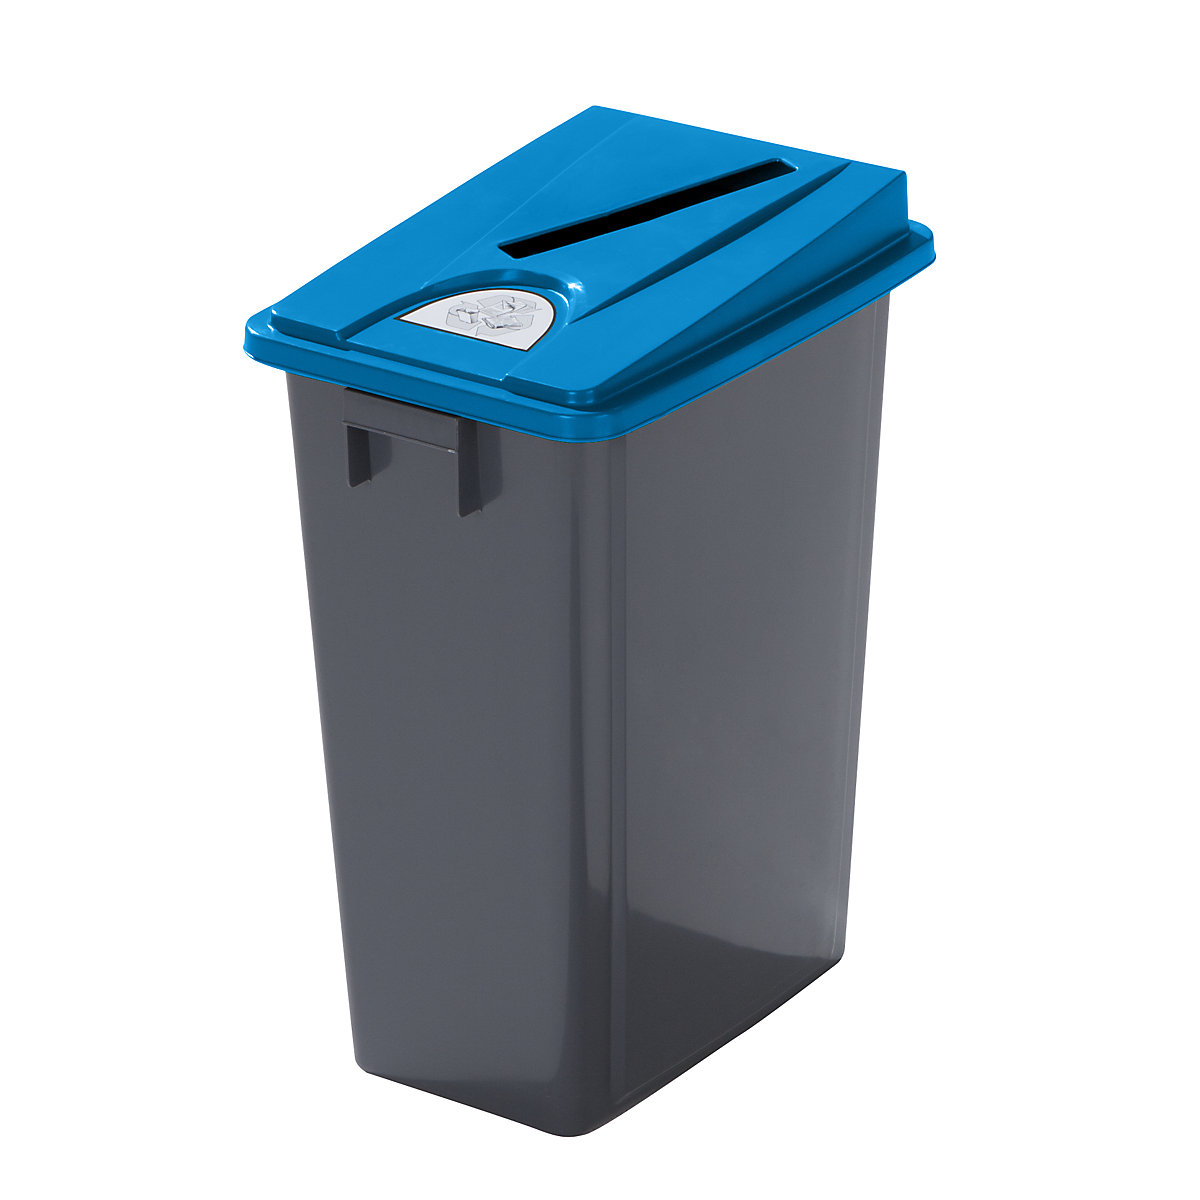 Coletor de materiais recicláveis robusto com tampa